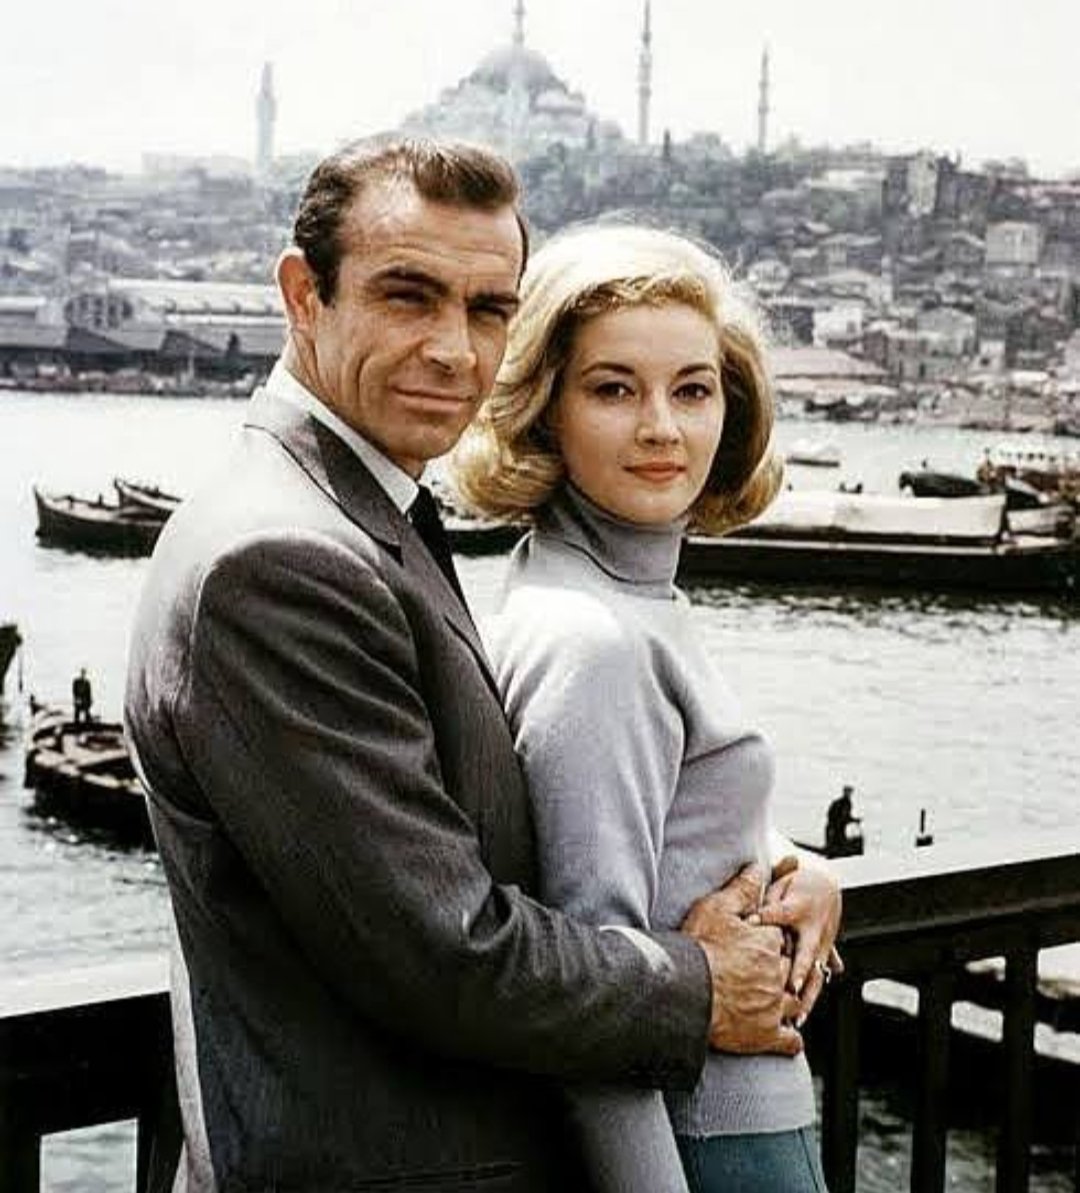 @mazidenfotograf Sean Connery - Daniela Bianchi

Rusya'dan Sevgilerle filminden bir sahne; 1963 yapımı bir casus filmi ve Eon Productions tarafından çekilen ikinci James Bond filmi.